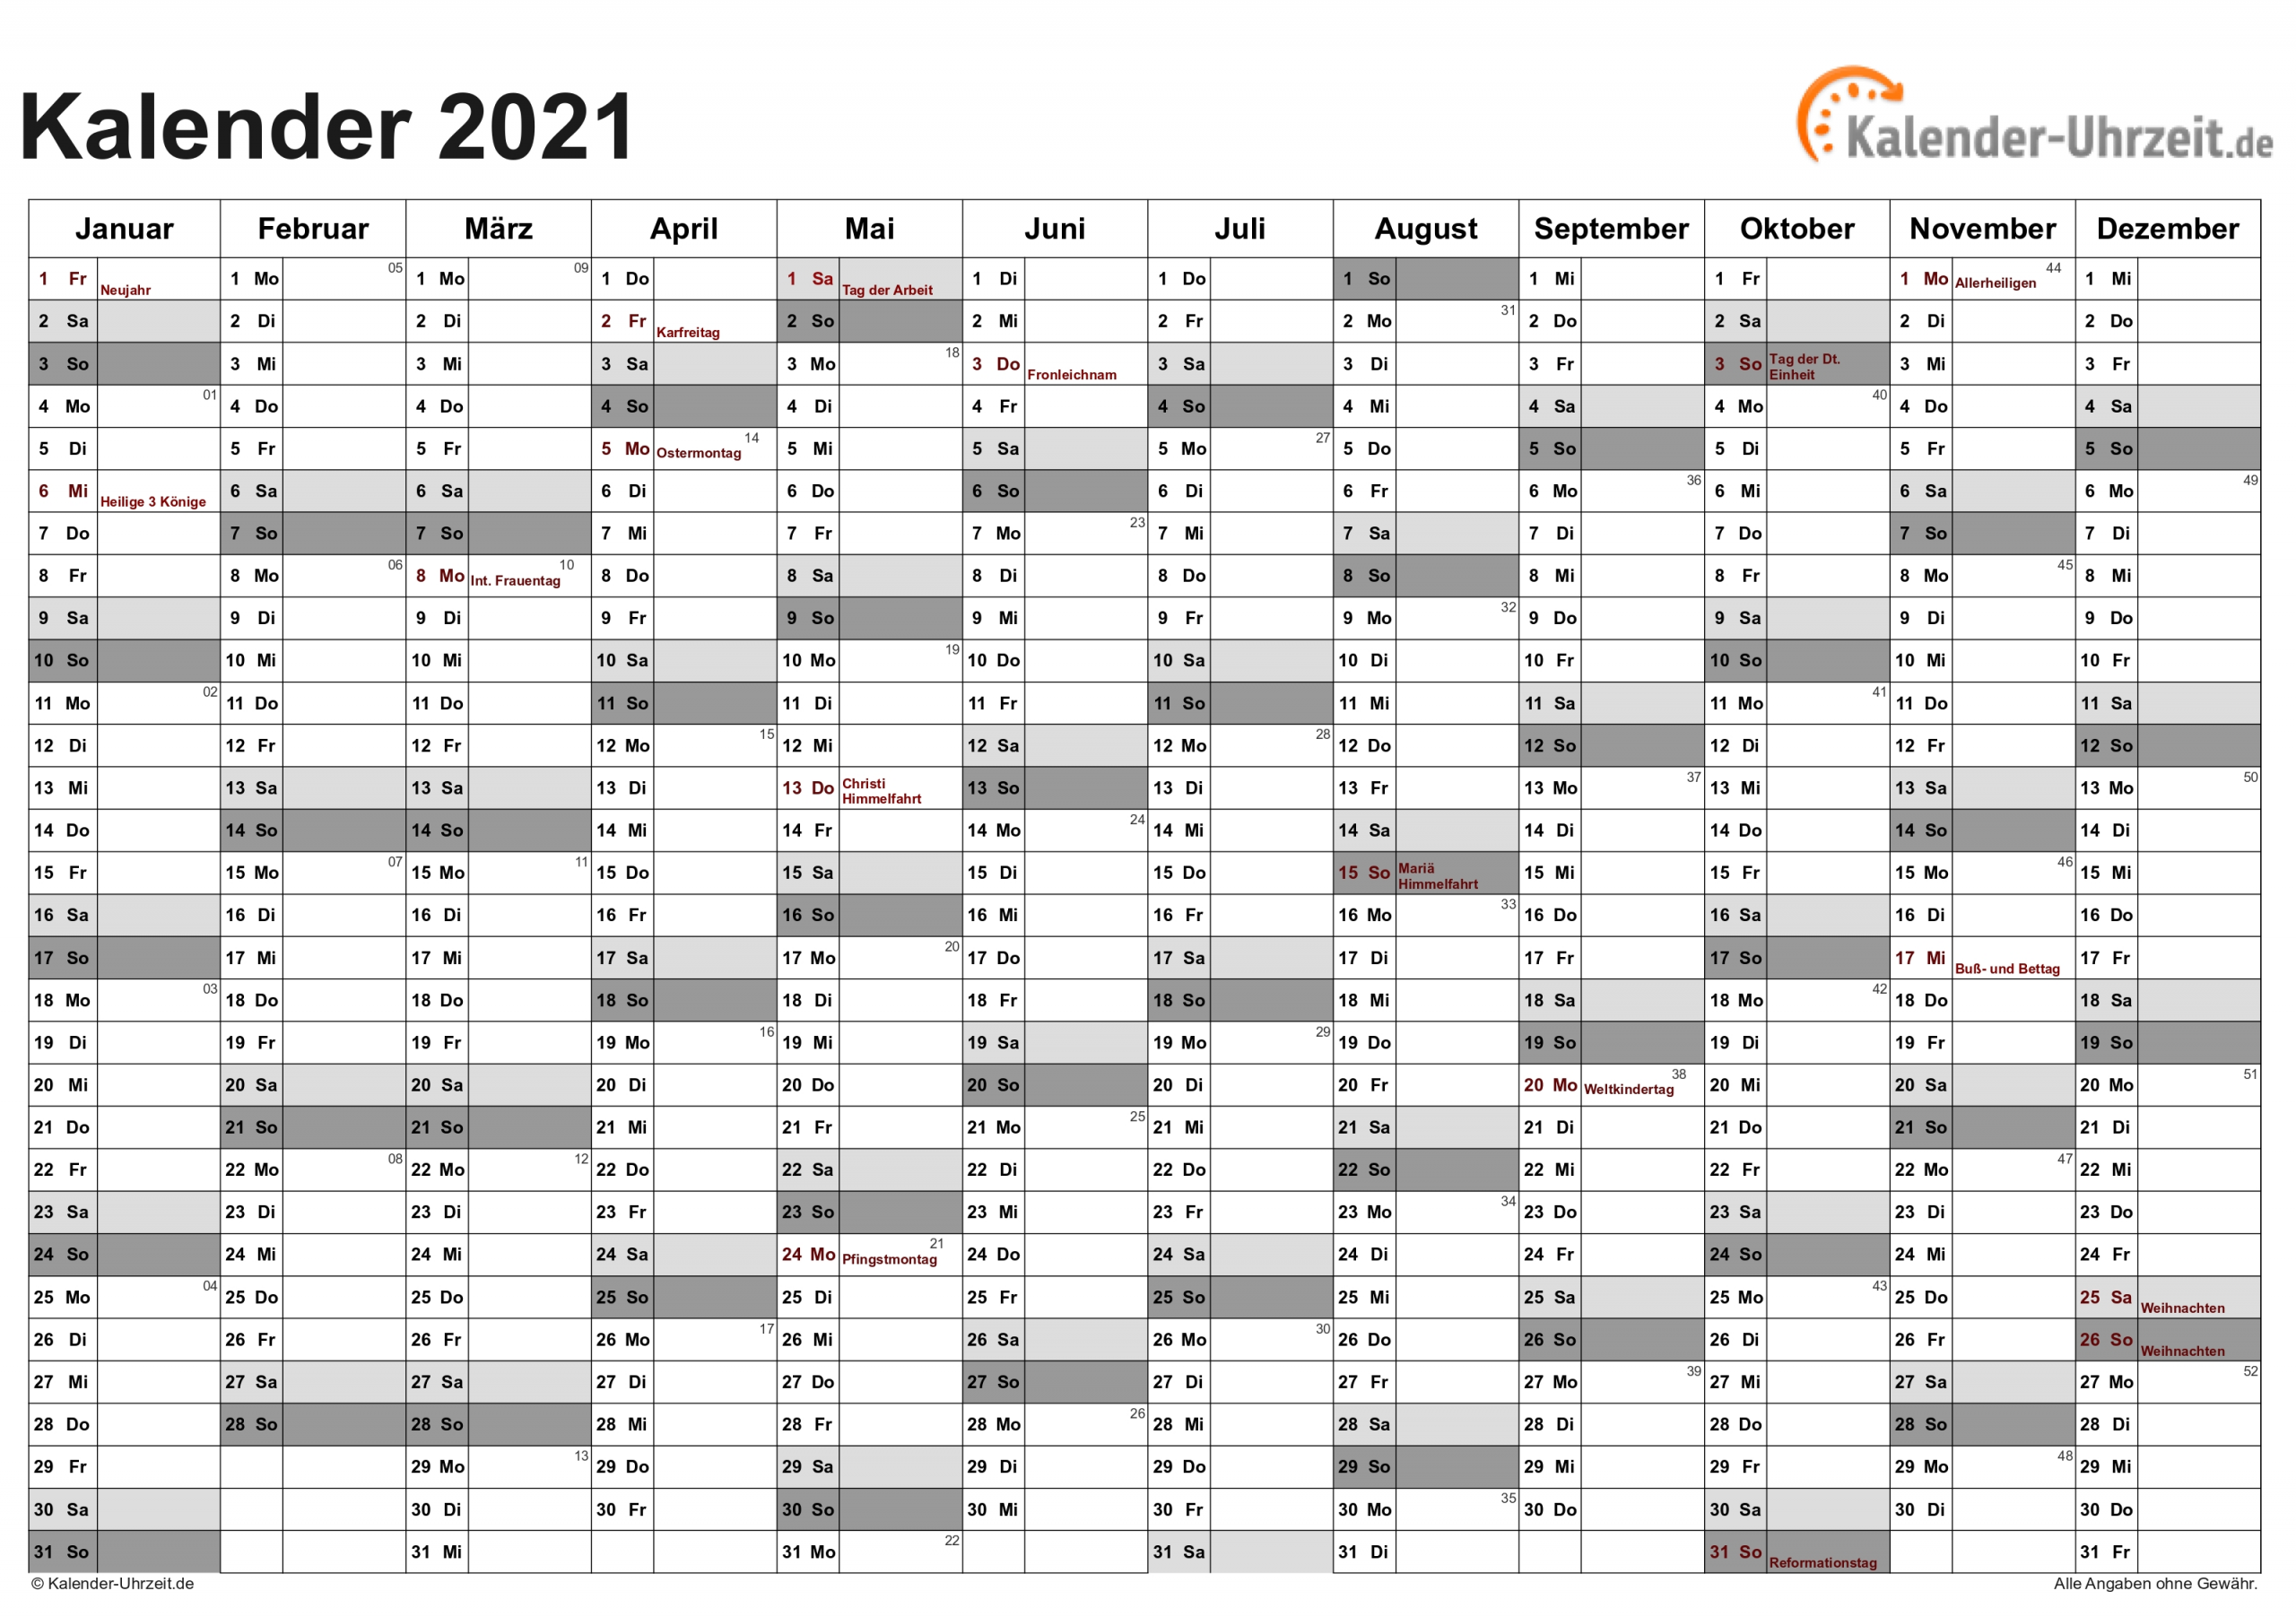 Get Terminkalender 2021 Zum Ausdrucken